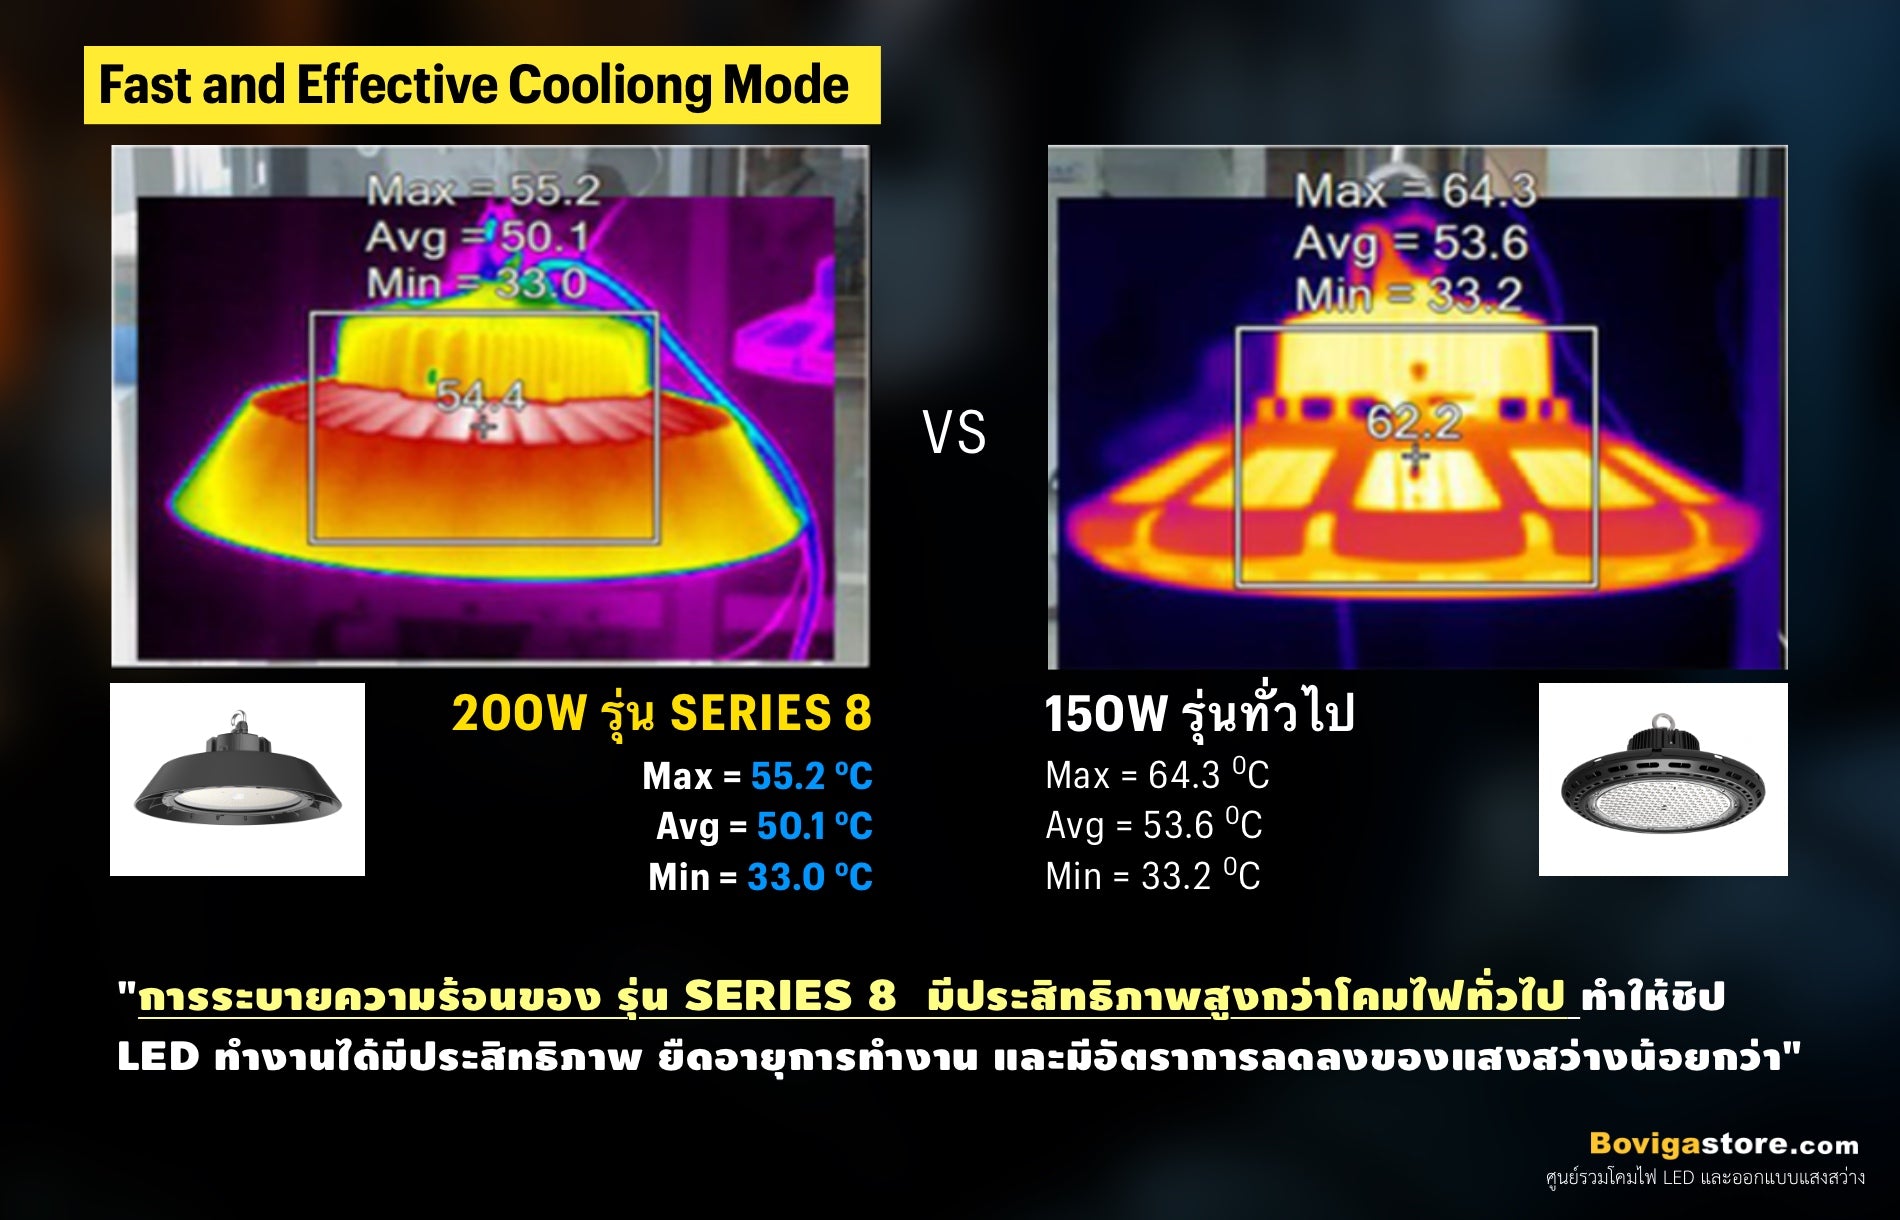 เปรียบเทียบประสิทธิภาพการระบายความร้อนของ led high bay รุ่น series 8 แบรนด์ box bright